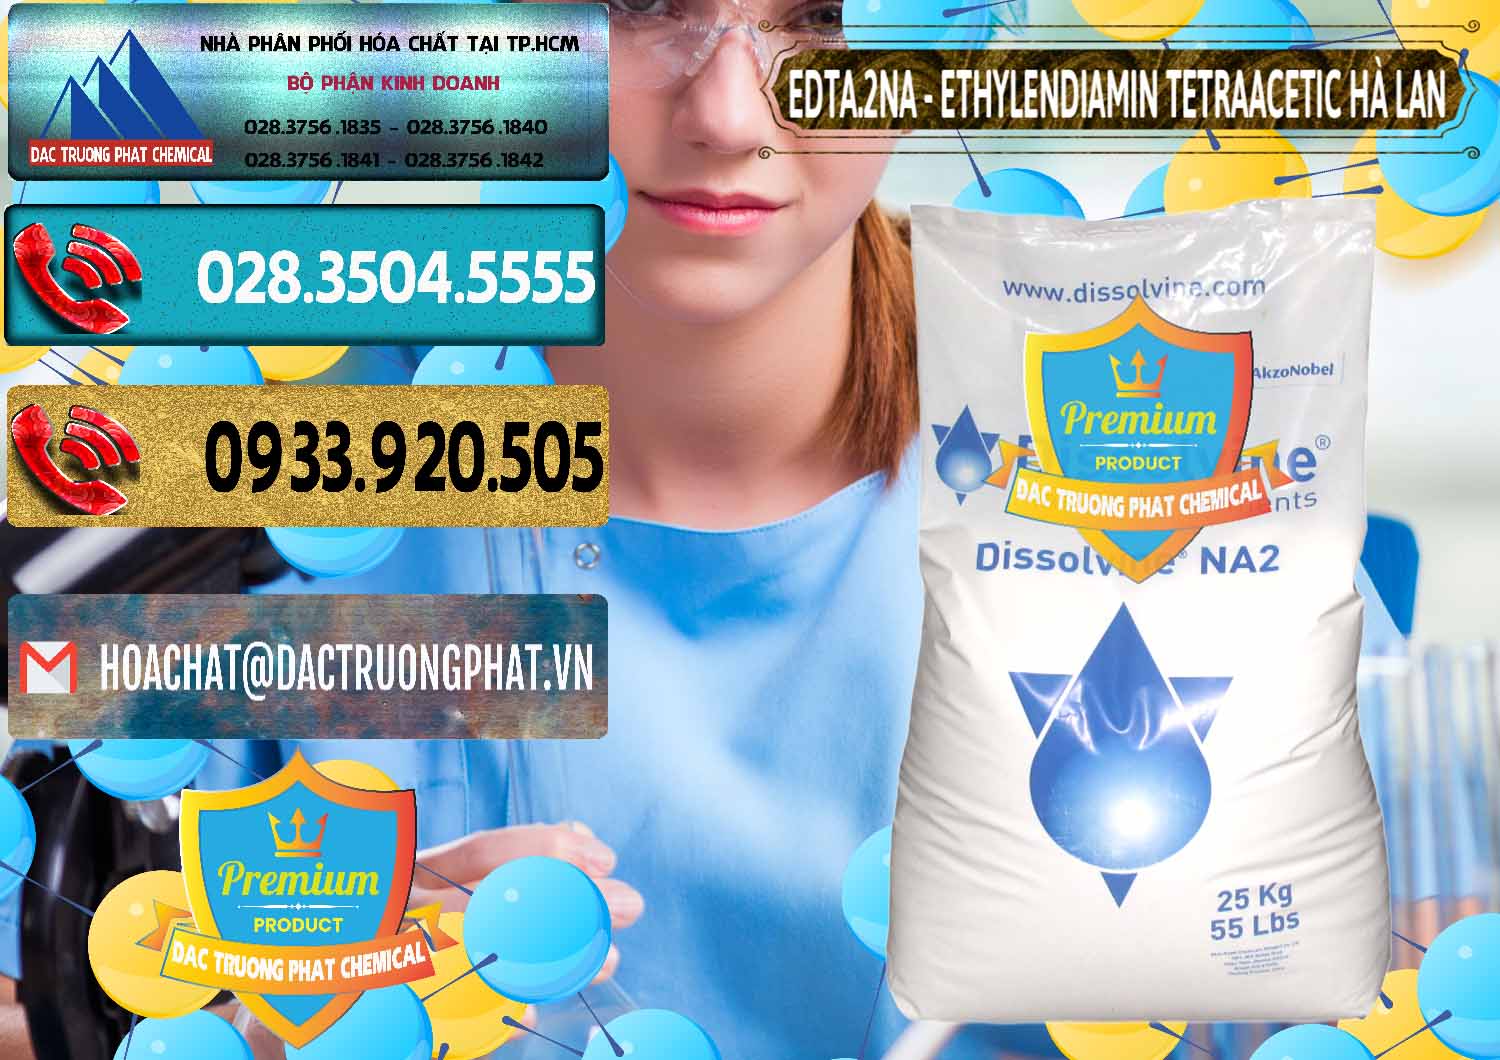 Đơn vị chuyên cung cấp và bán EDTA.2NA - Ethylendiamin Tetraacetic Dissolvine Hà Lan Netherlands - 0064 - Phân phối & bán hóa chất tại TP.HCM - hoachatdetnhuom.com